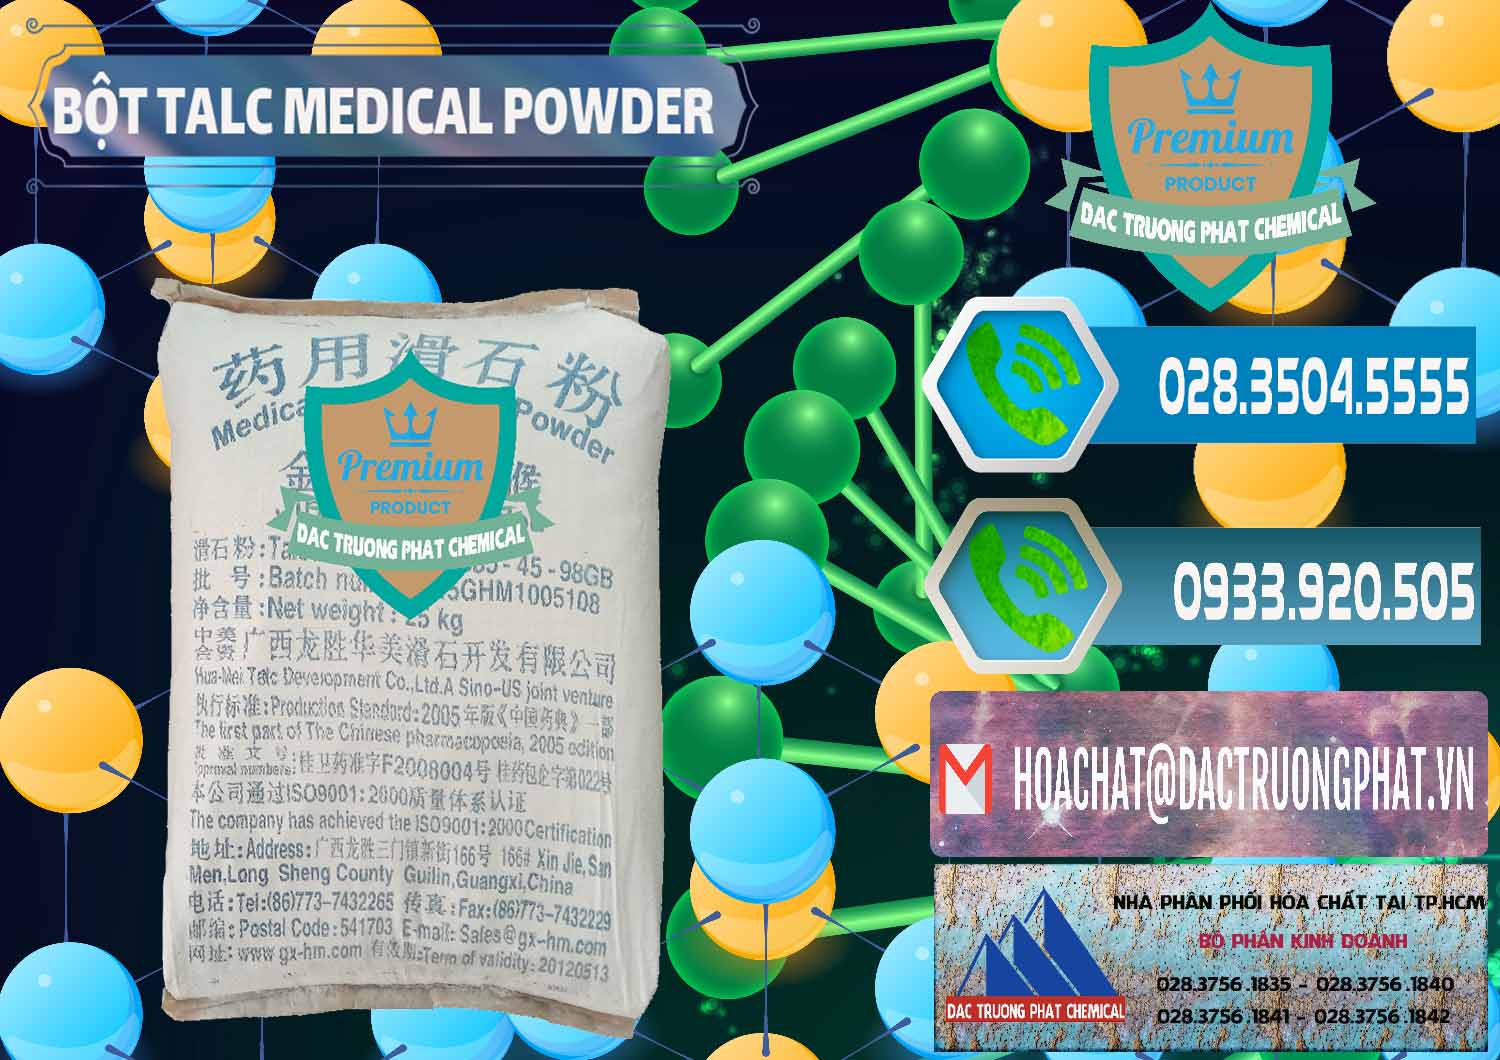 Cty chuyên phân phối & bán Bột Talc Medical Powder Trung Quốc China - 0036 - Nơi nhập khẩu _ phân phối hóa chất tại TP.HCM - congtyhoachat.net